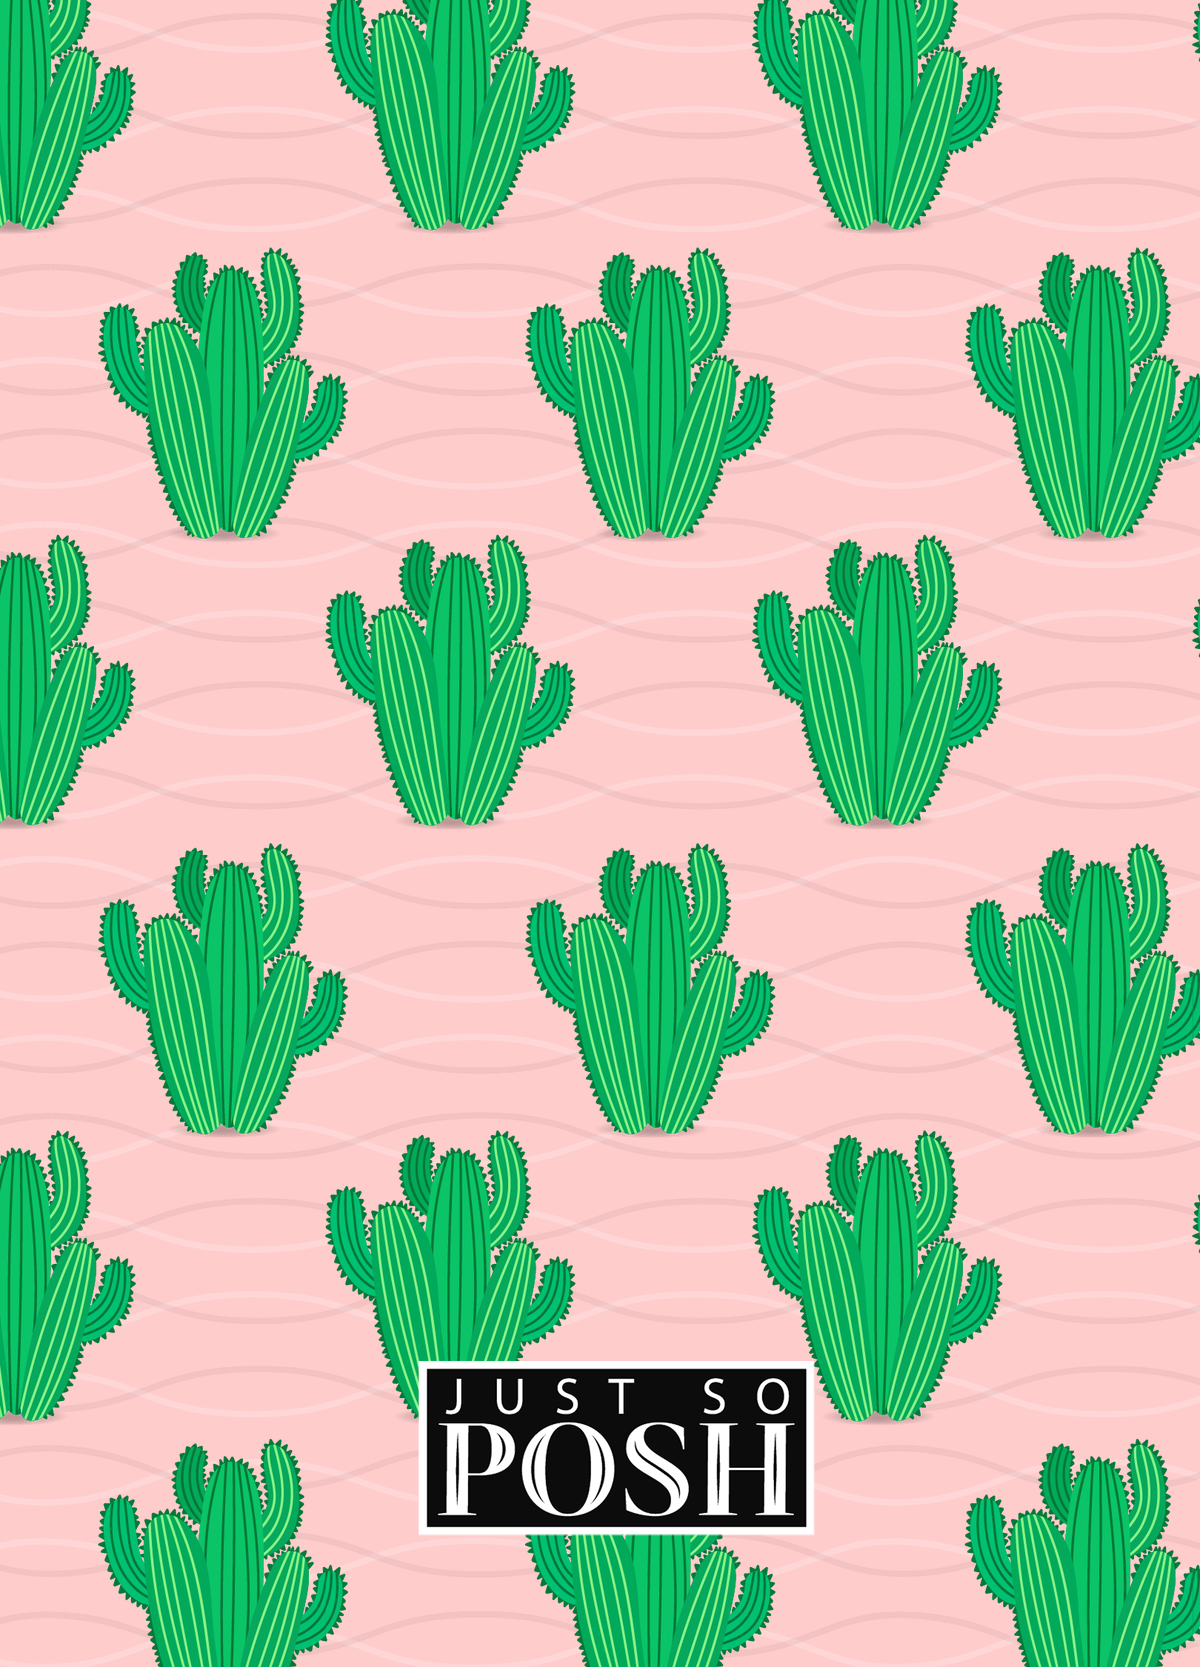 Personalized Cactus / Succulent Journal IX - Cactus Pattern VI - Back View